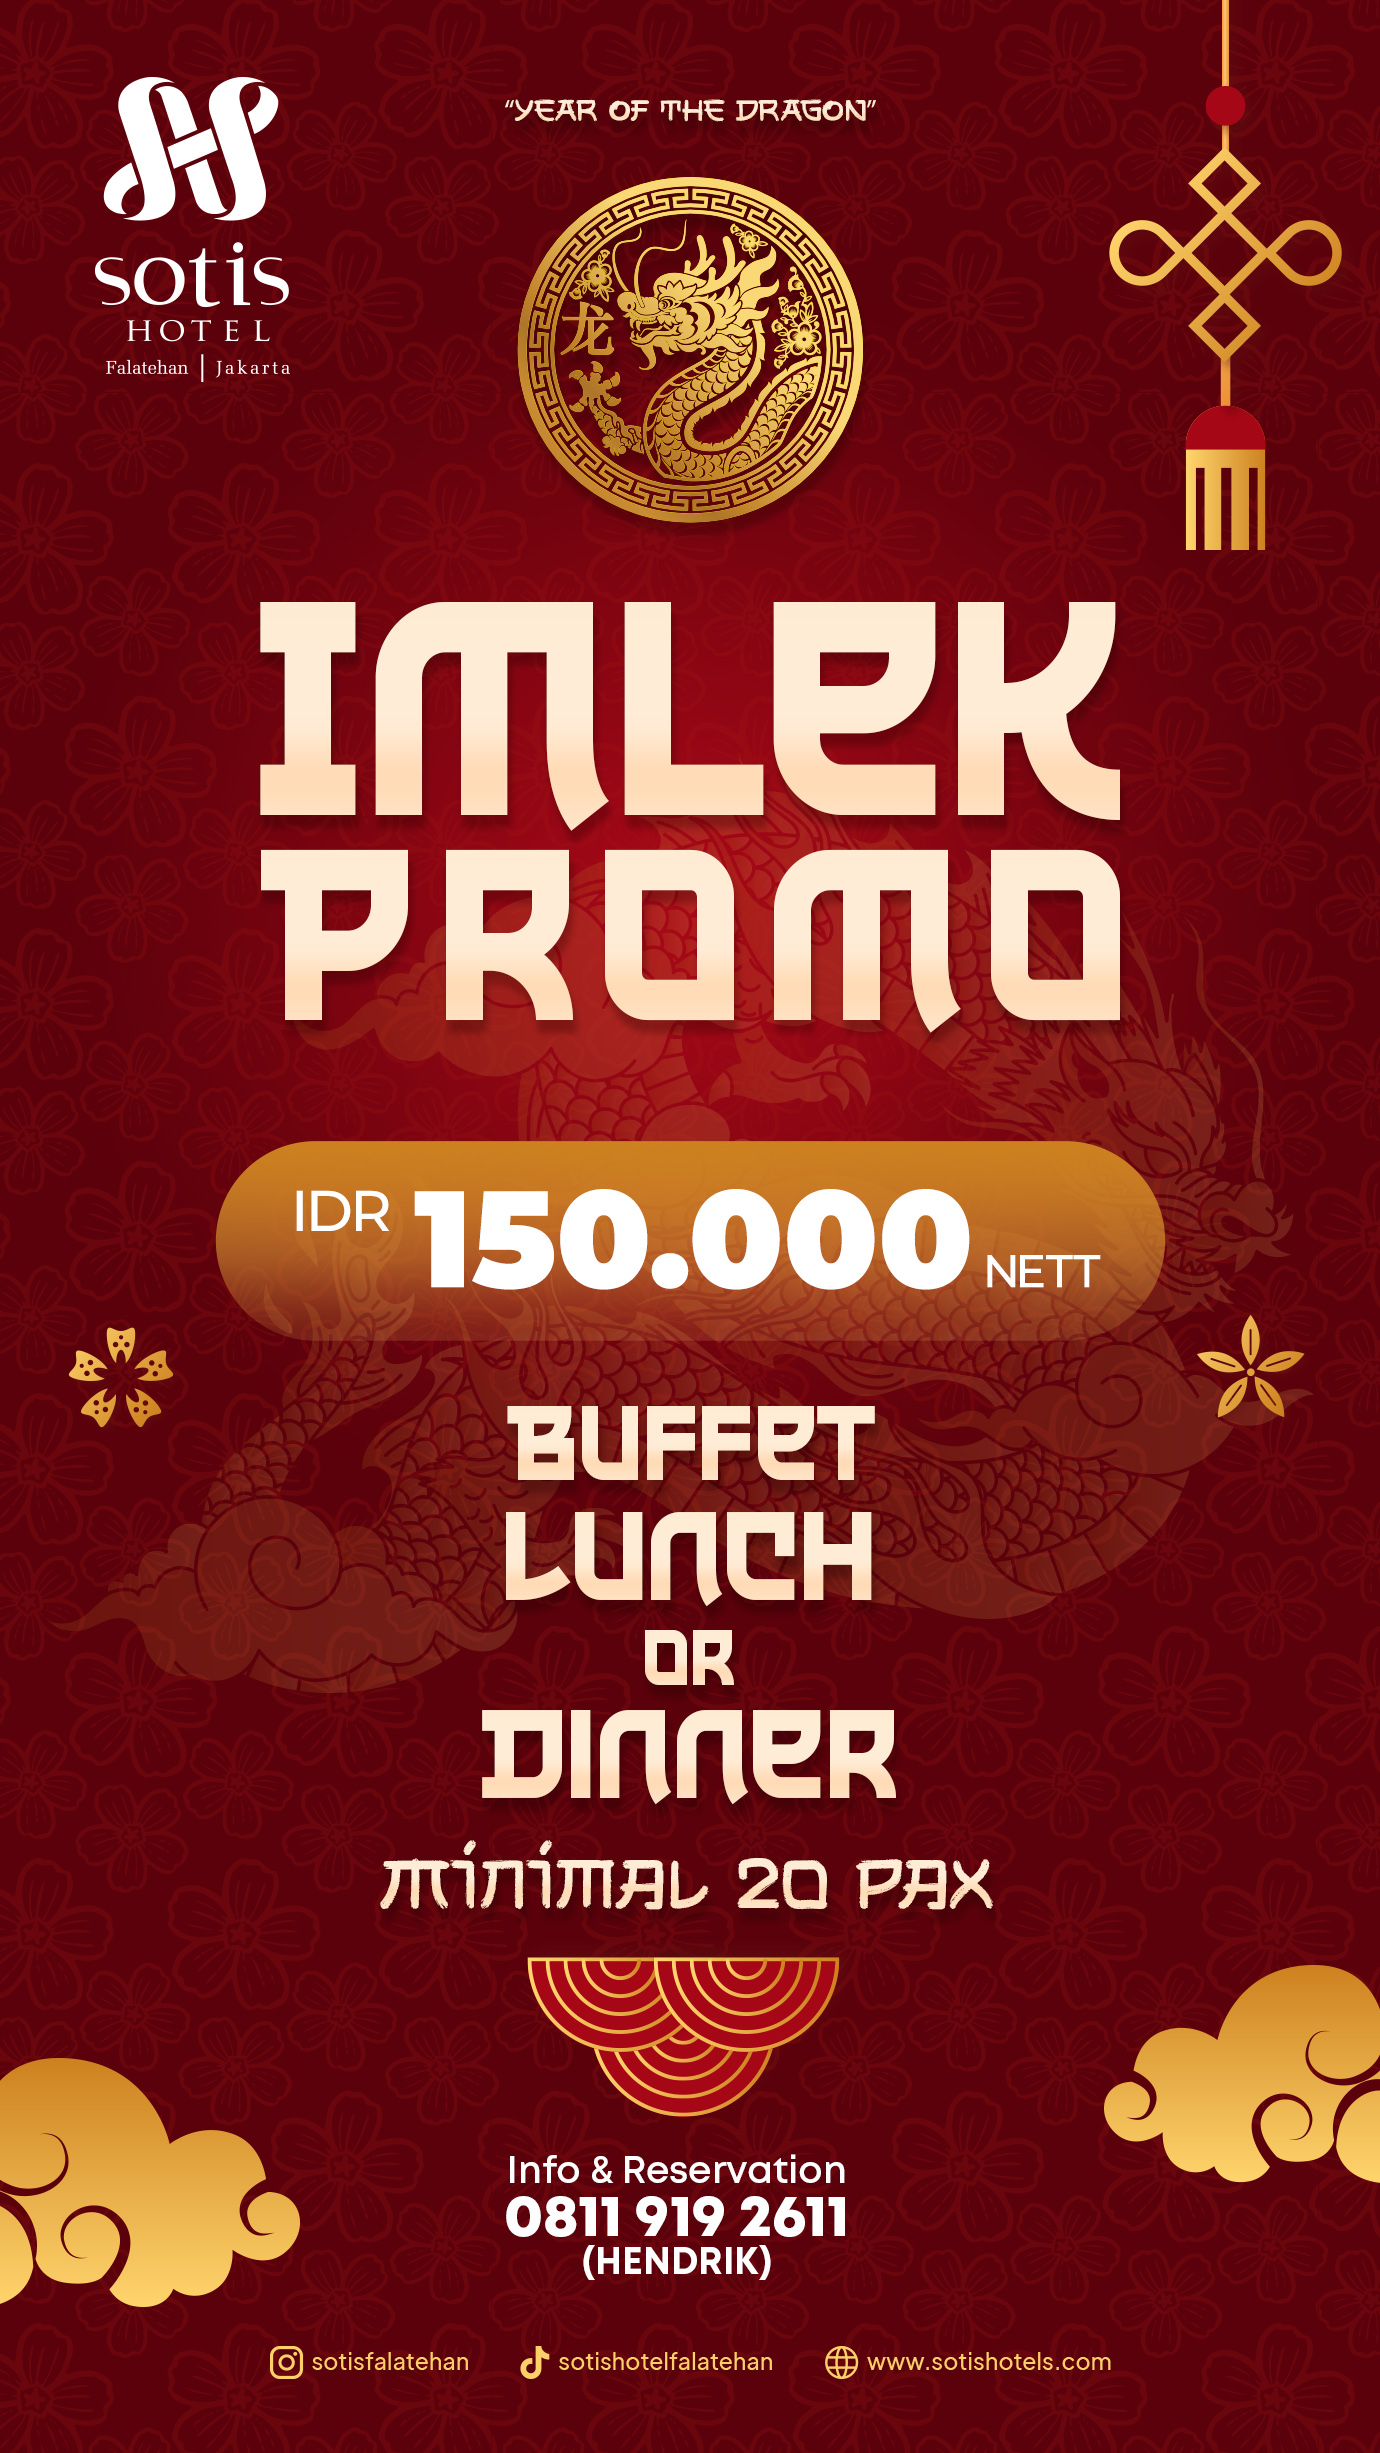 IMLEK Promo - Lunch or Dinner Buffet